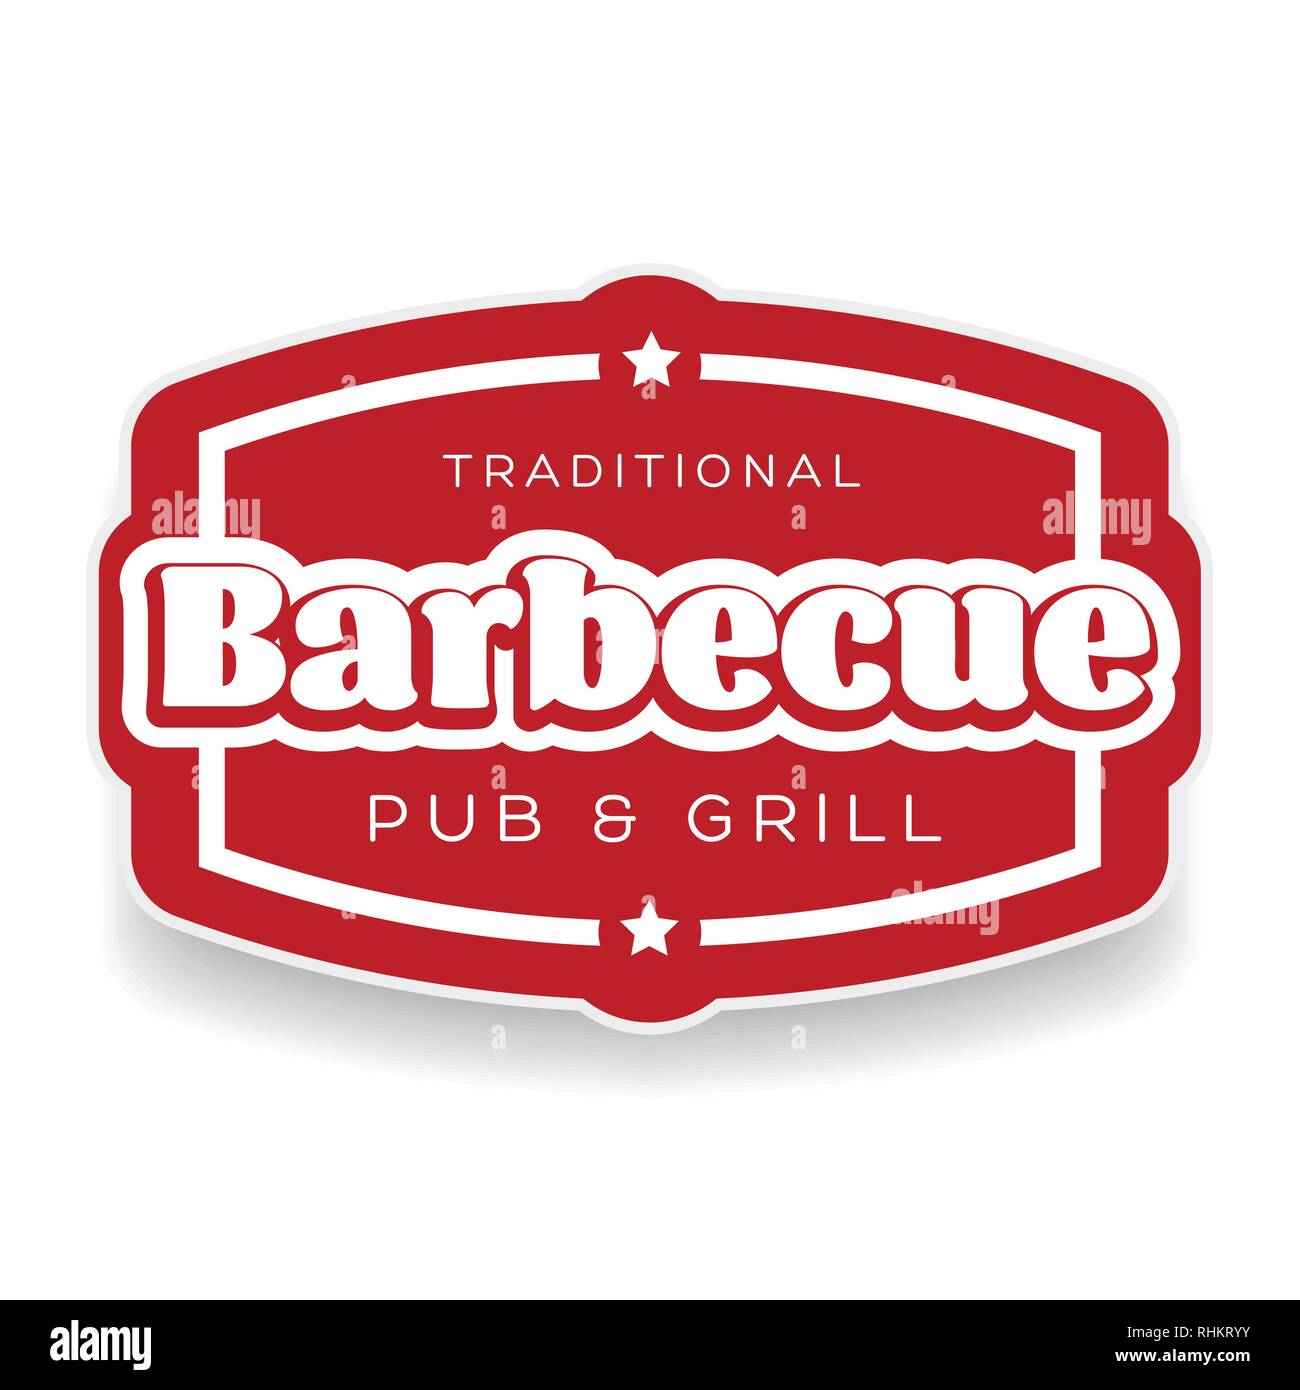 Barbecue et grill traditionnel pub sign Illustration de Vecteur